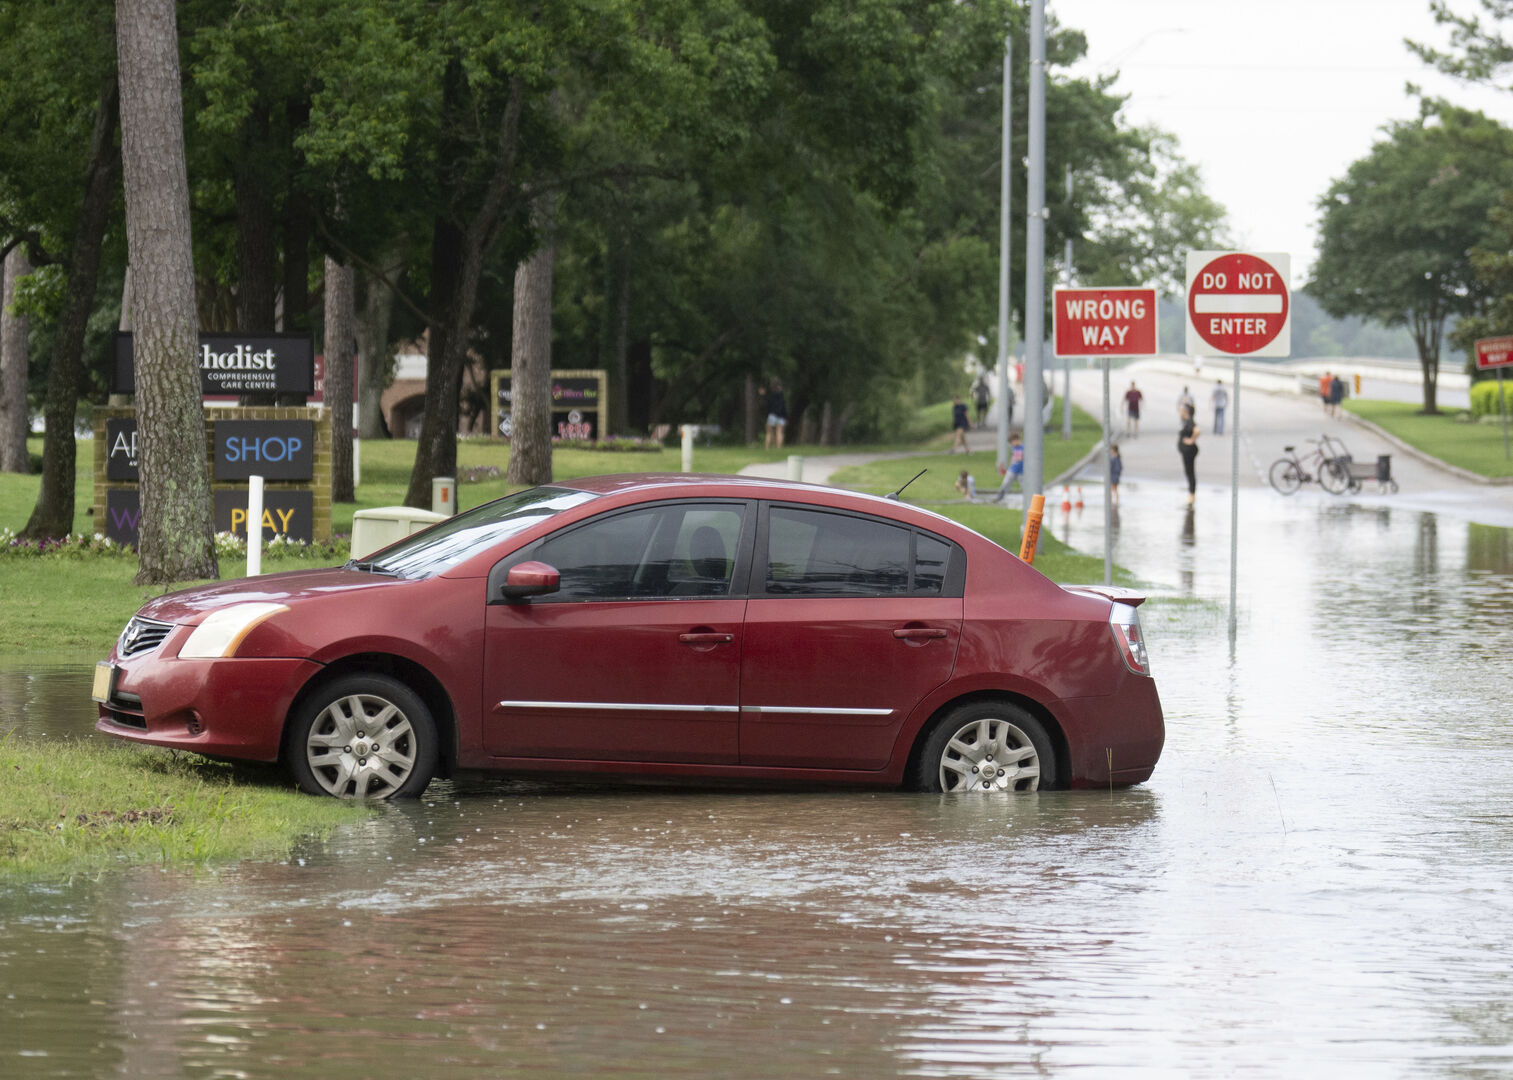 فيضان يجتاح مناطق واسعة في تكساس وسط توقعات بمزيد من الأمطار (صور)